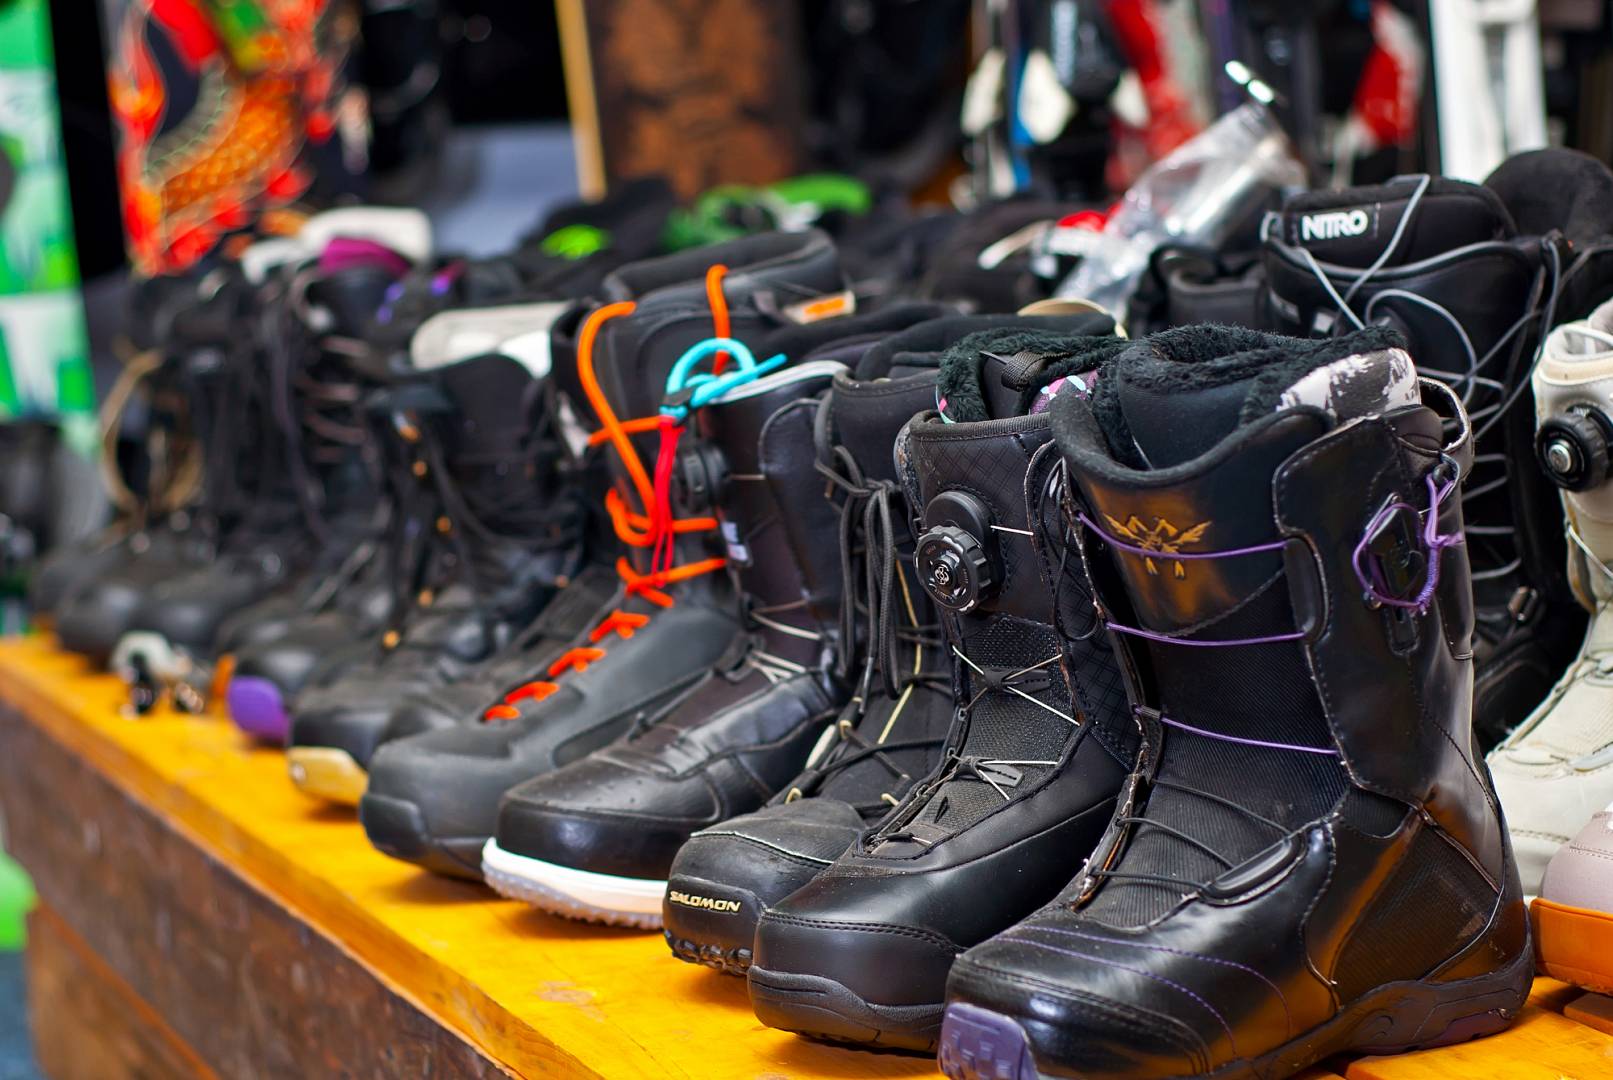 czarne, wiązane buty snowboardowe na wystawie w sklepie